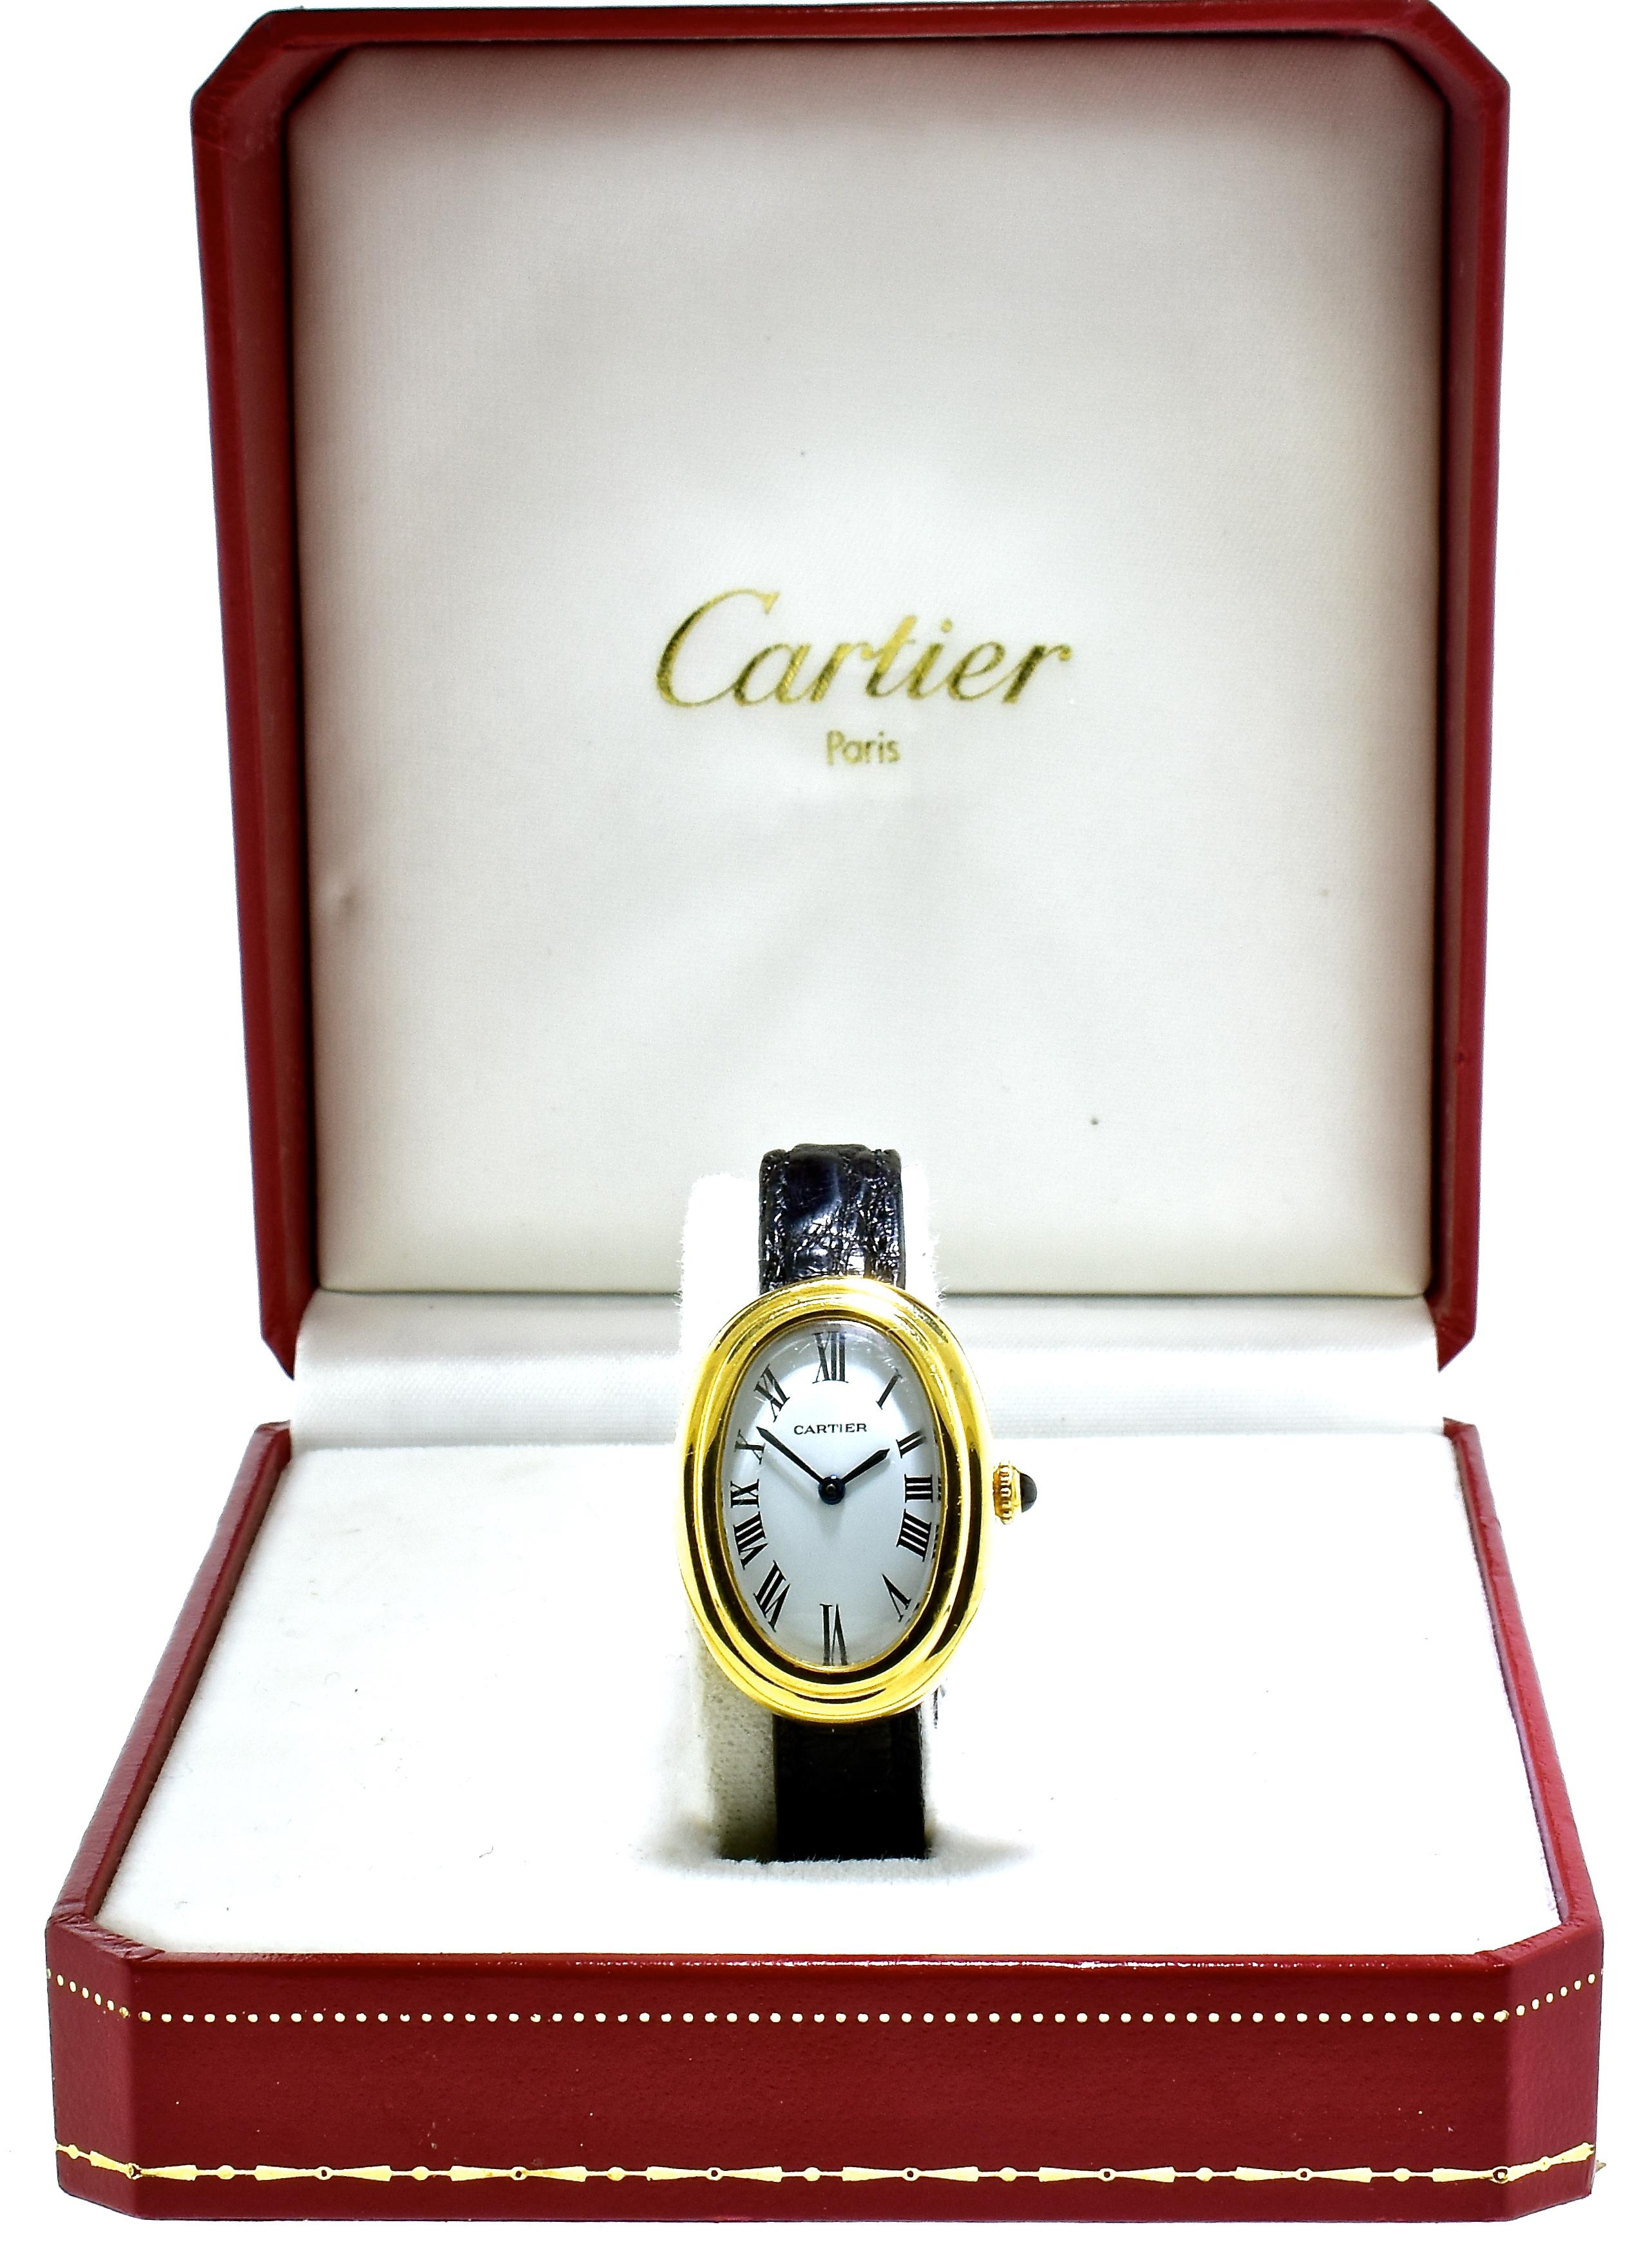 Montre-bracelet Cartier Baignoire 18K vintage en or jaune 18K avec référence no. 780941795::. les dimensions sont : 23x32mm:: cette belle montre est un mouvement à remontage manuel:: avec un cadran blanc et les aiguilles noires sont des chiffres